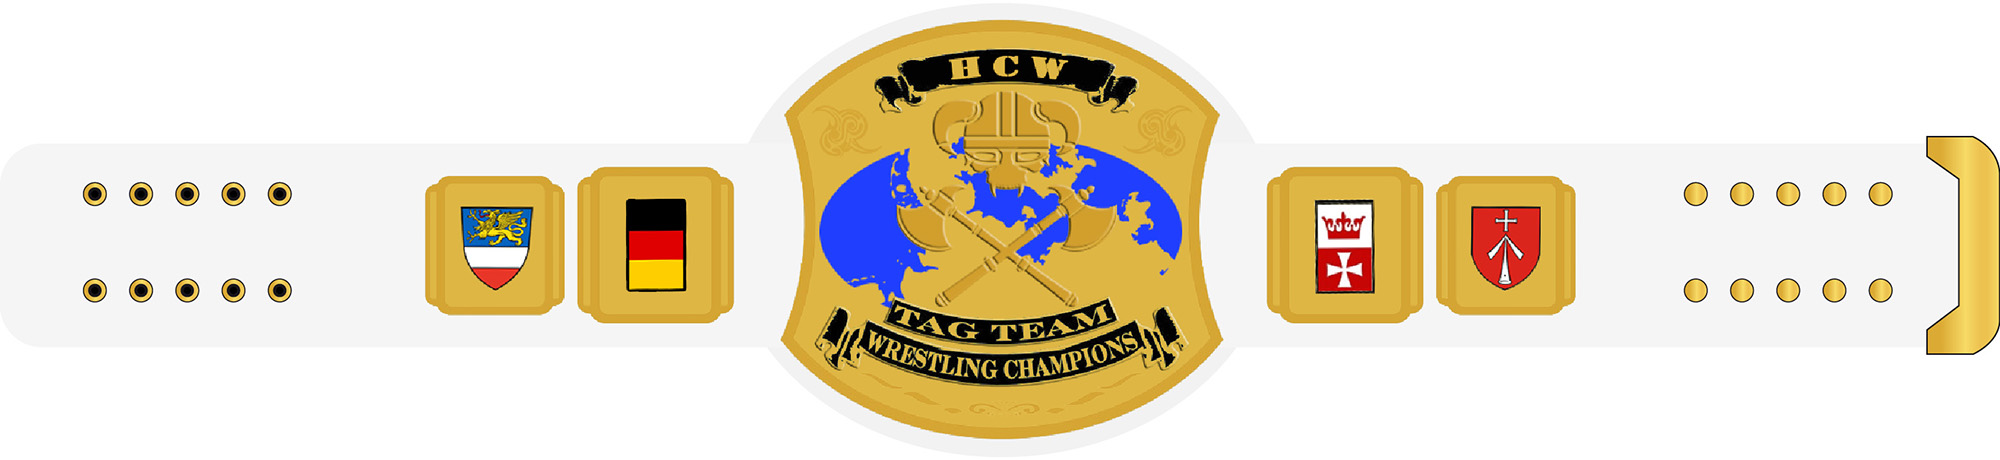 HCW Wrestling Tag Team Champion Grtel